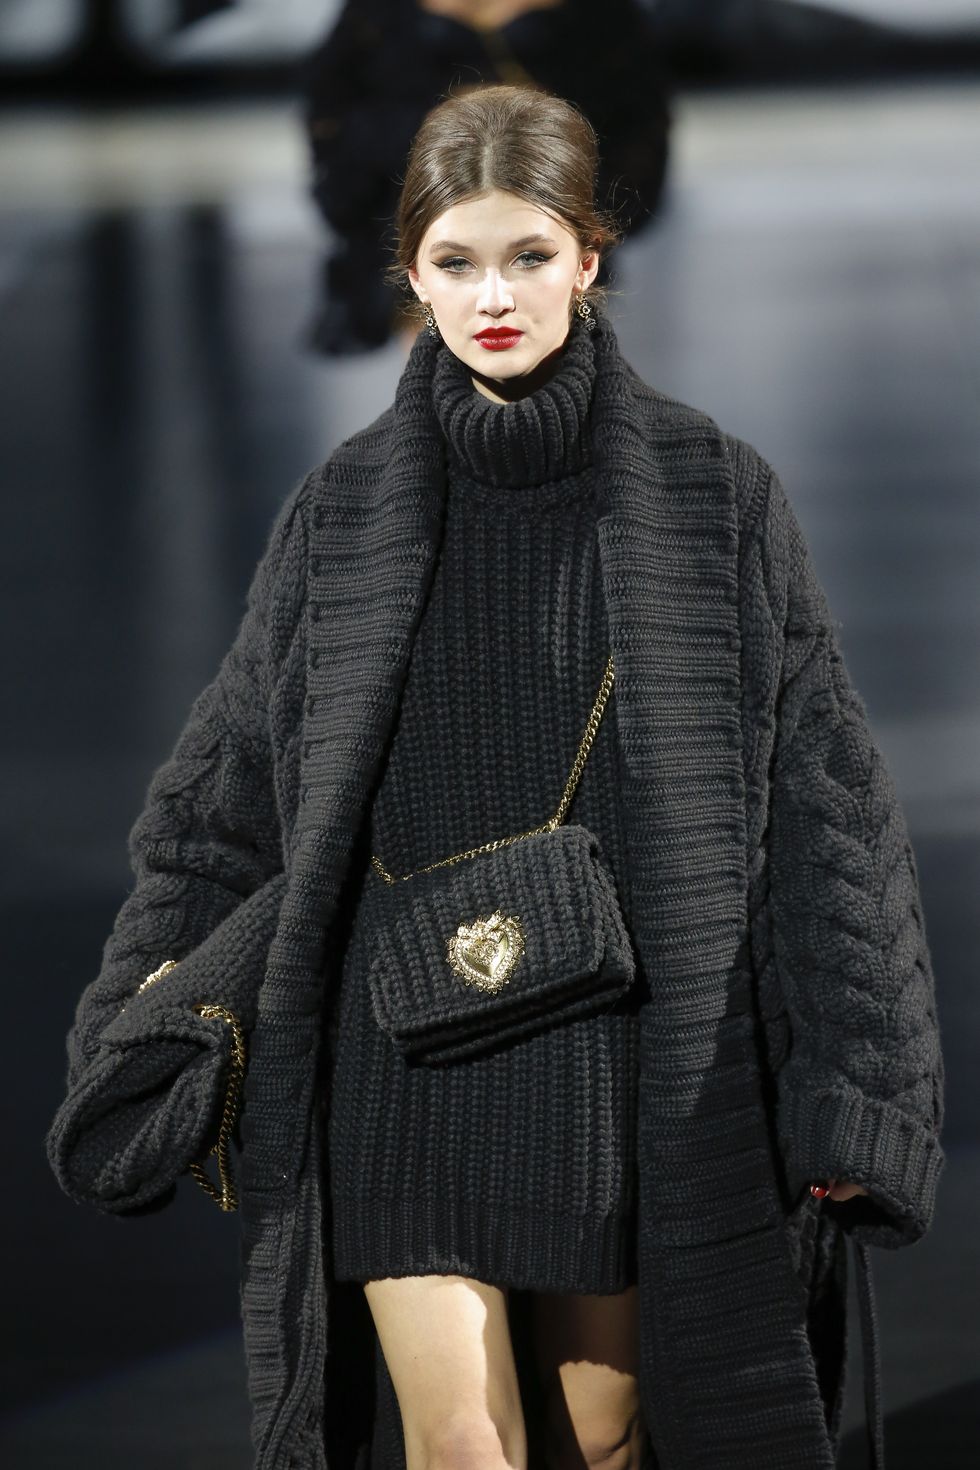 le migliori mini bag moda inverno 2021 da abbinare a tutti i tuoi outfit da giorno e da sera